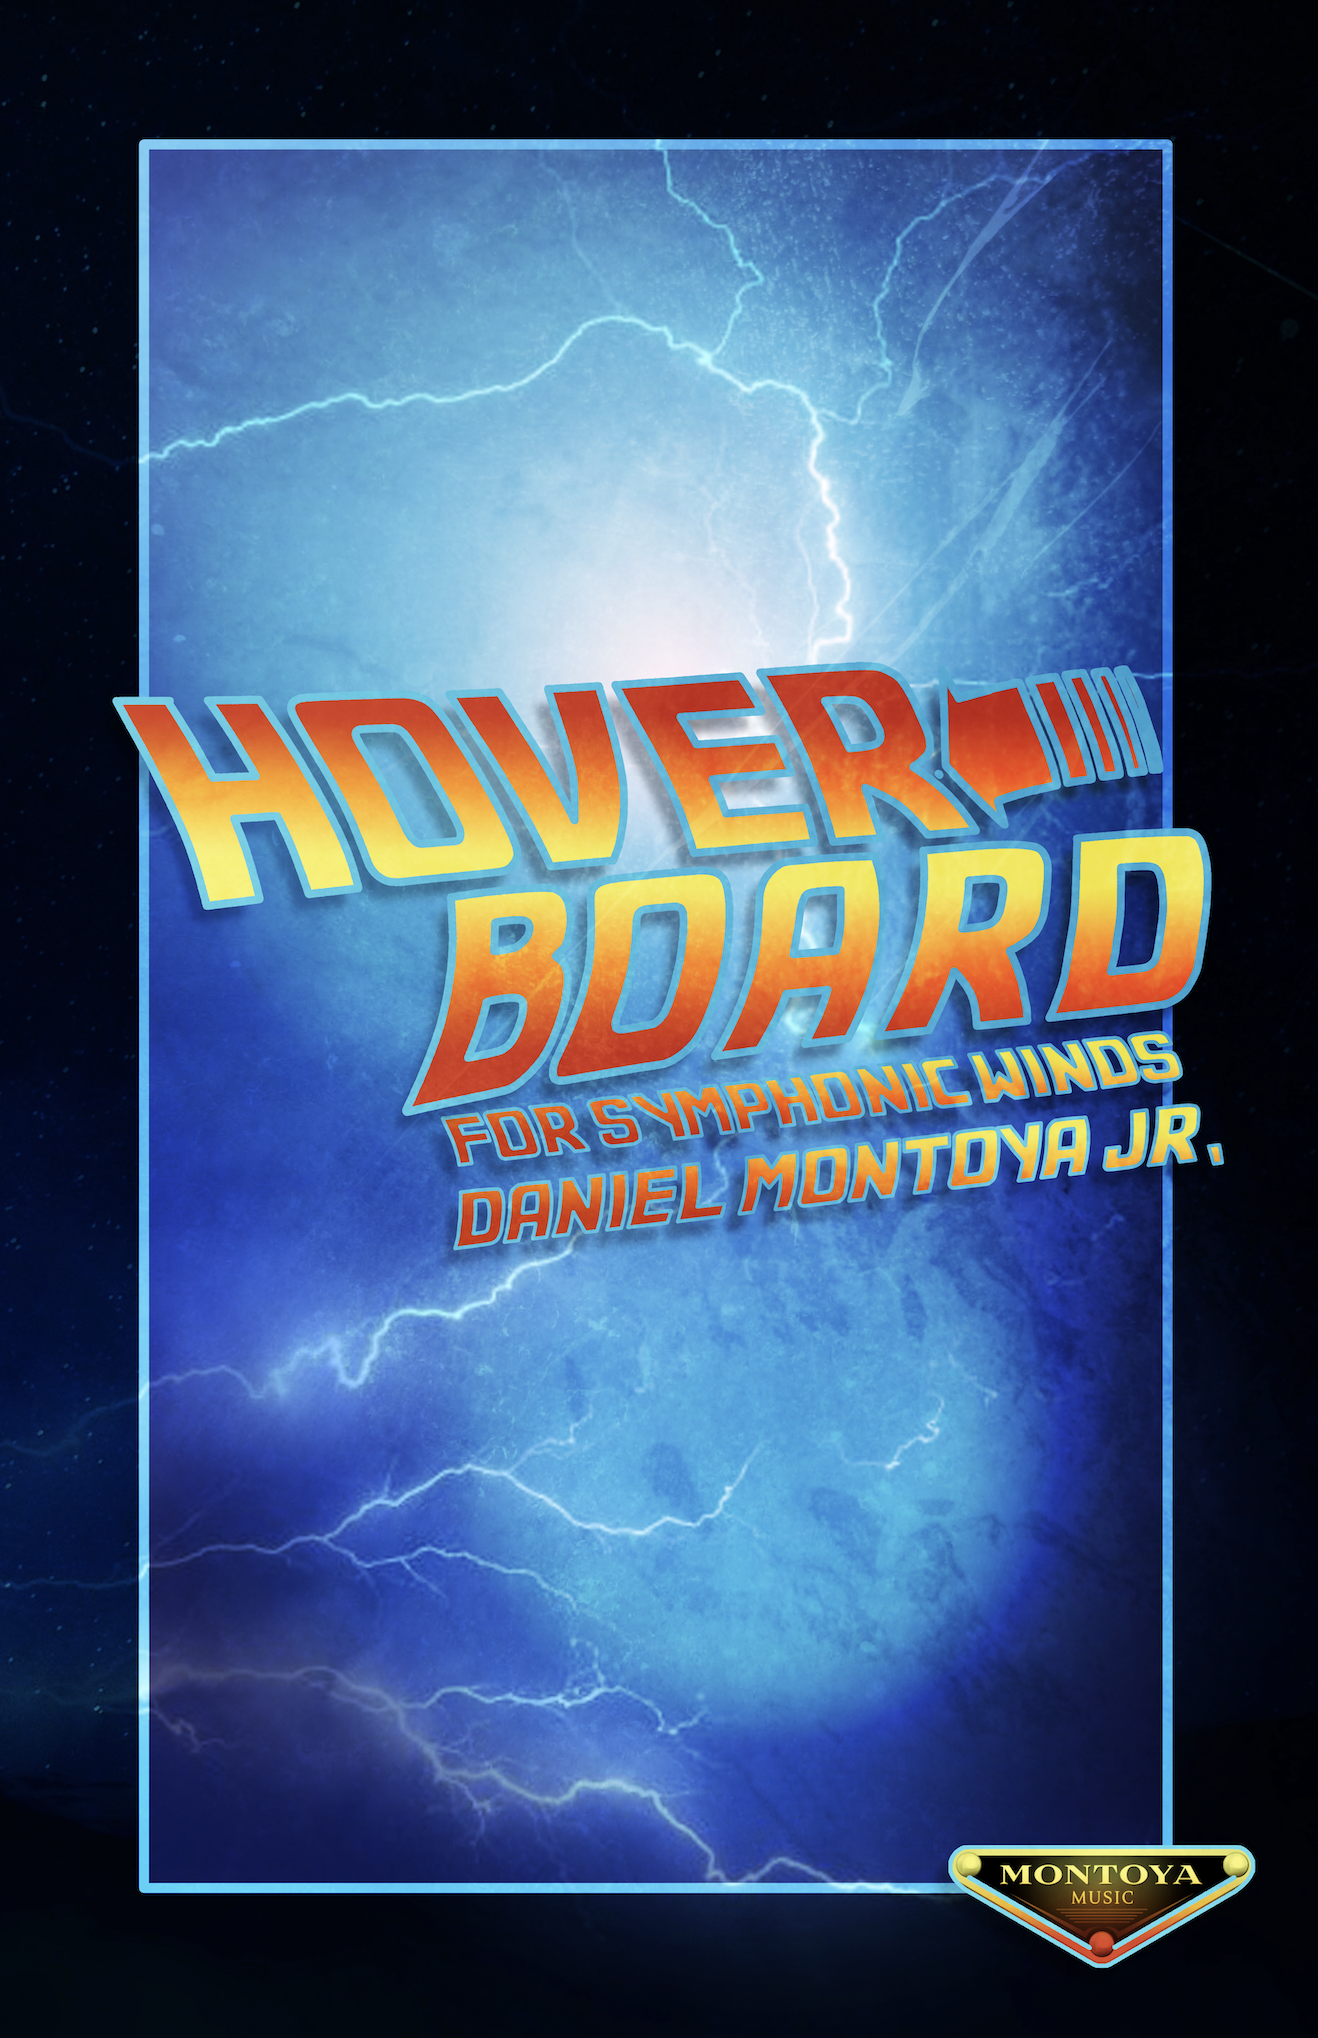 Hoverboard by Daniel Montoya Jr.